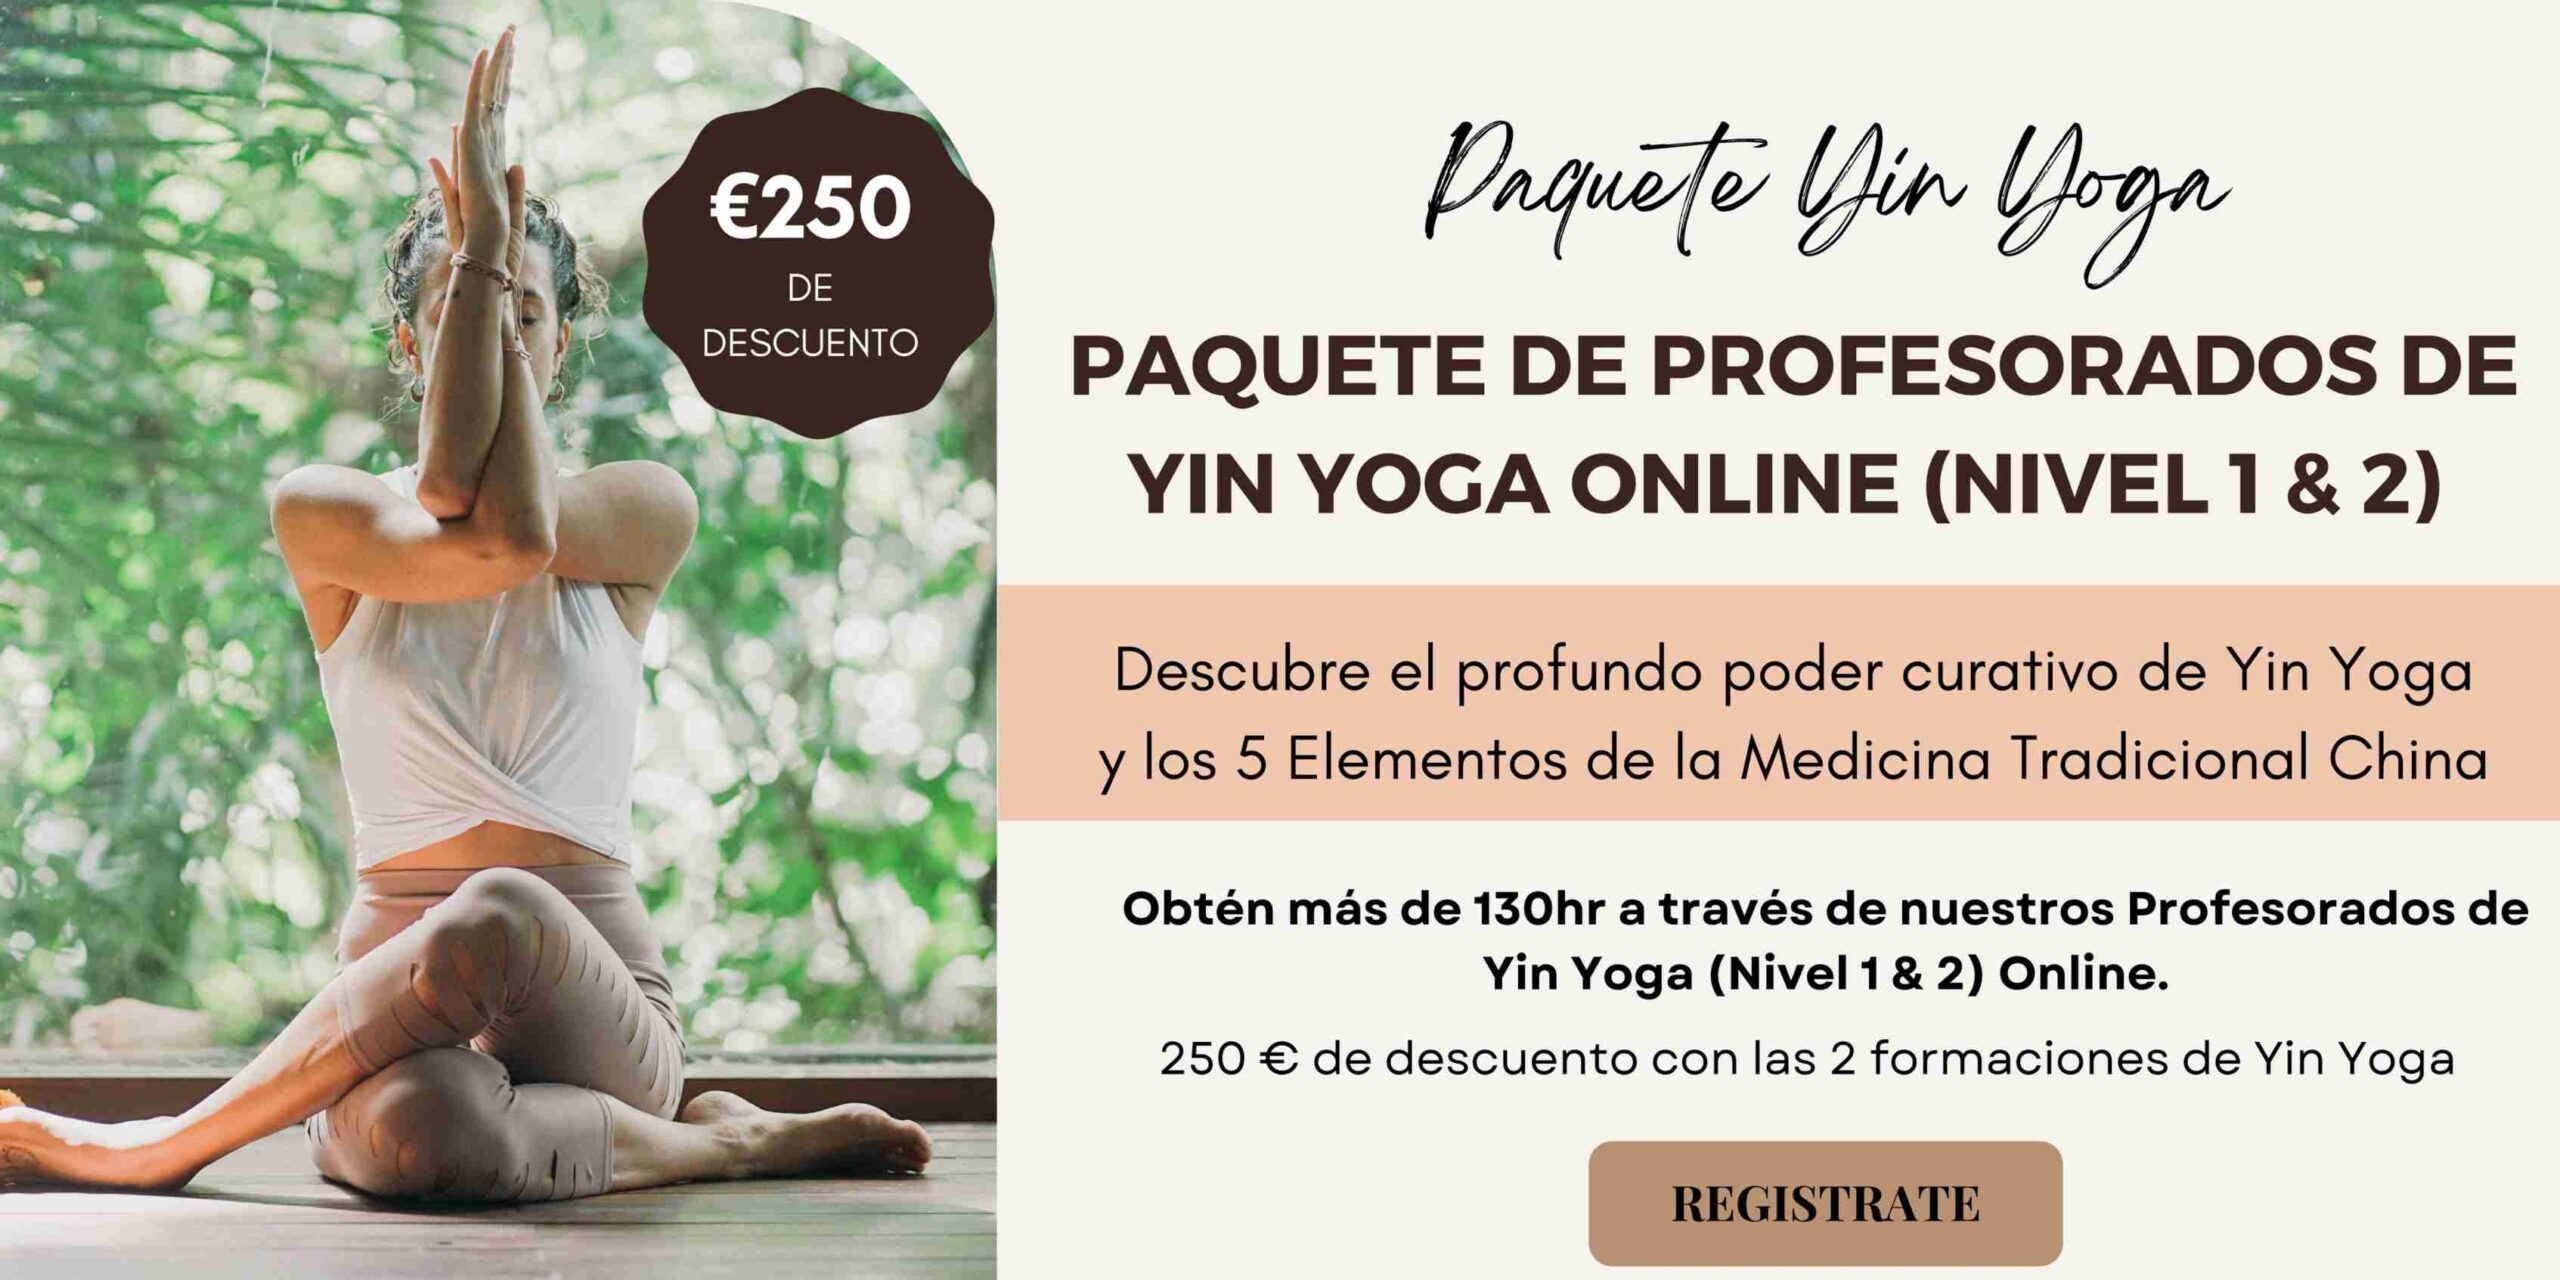 Paquete Profesorados de Yin Yoga Online